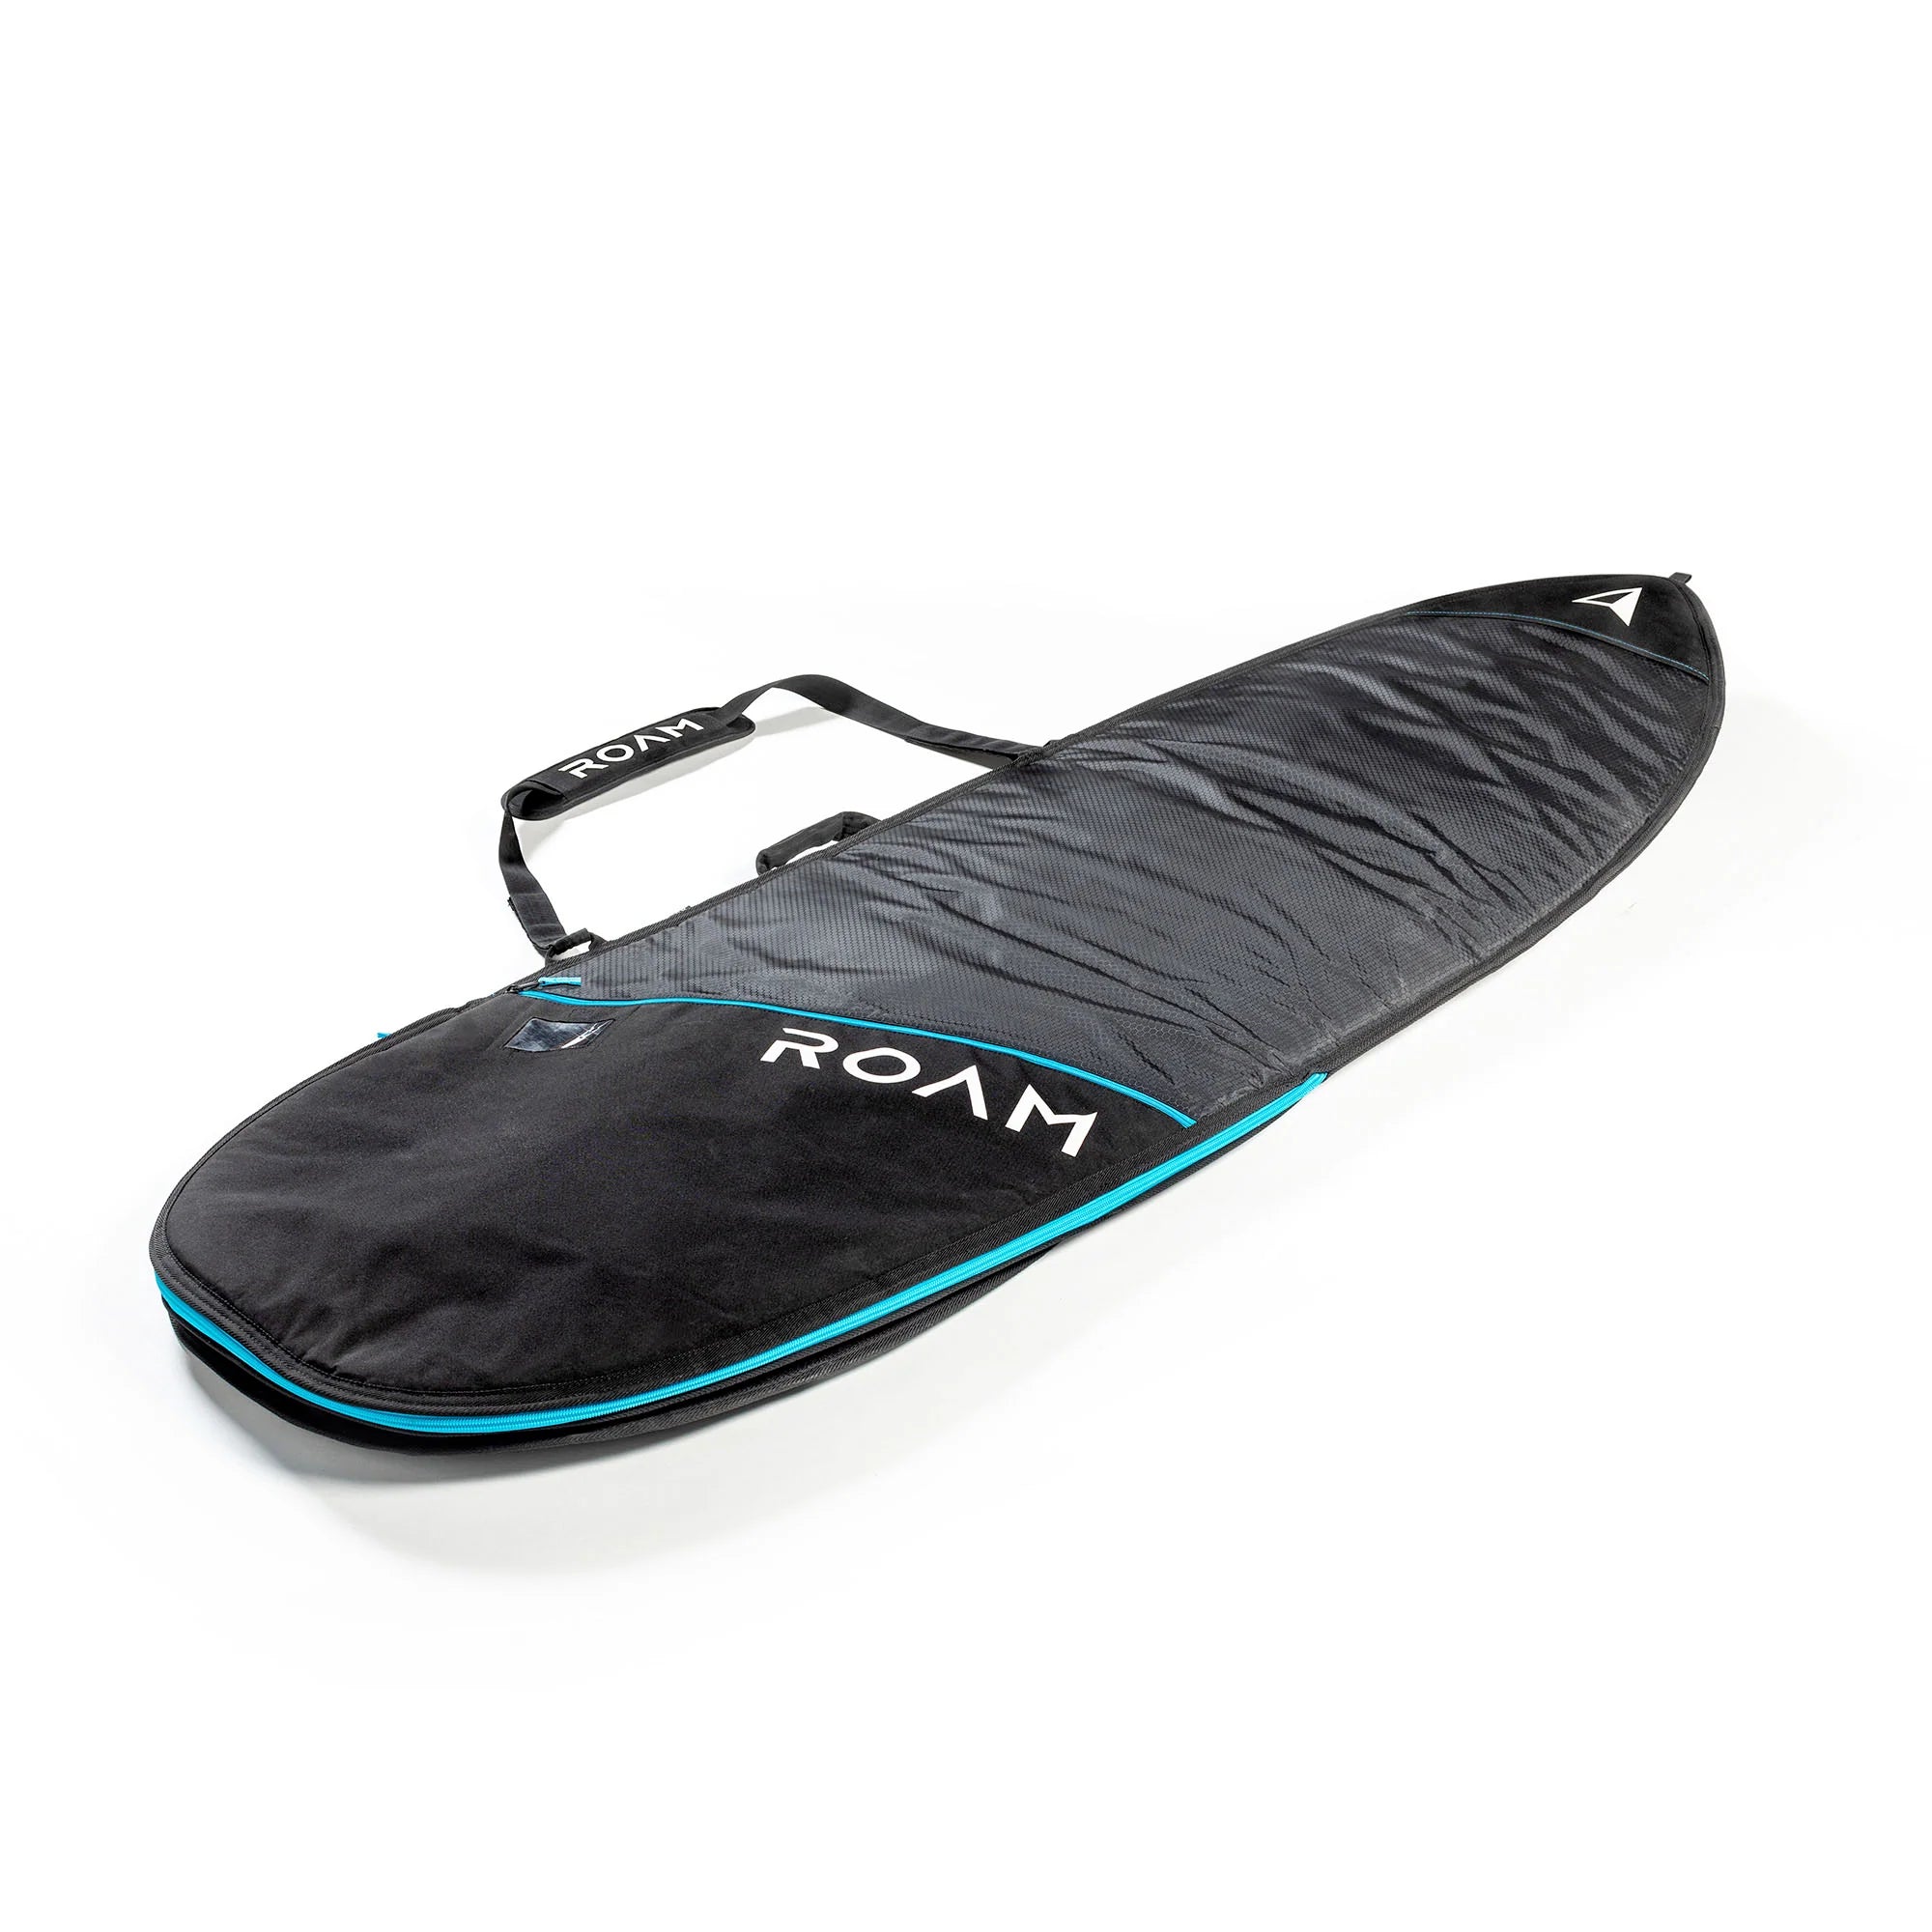 Next bag goes popular on Kickstarter: The new roam sling bag –  sonyalpharumors